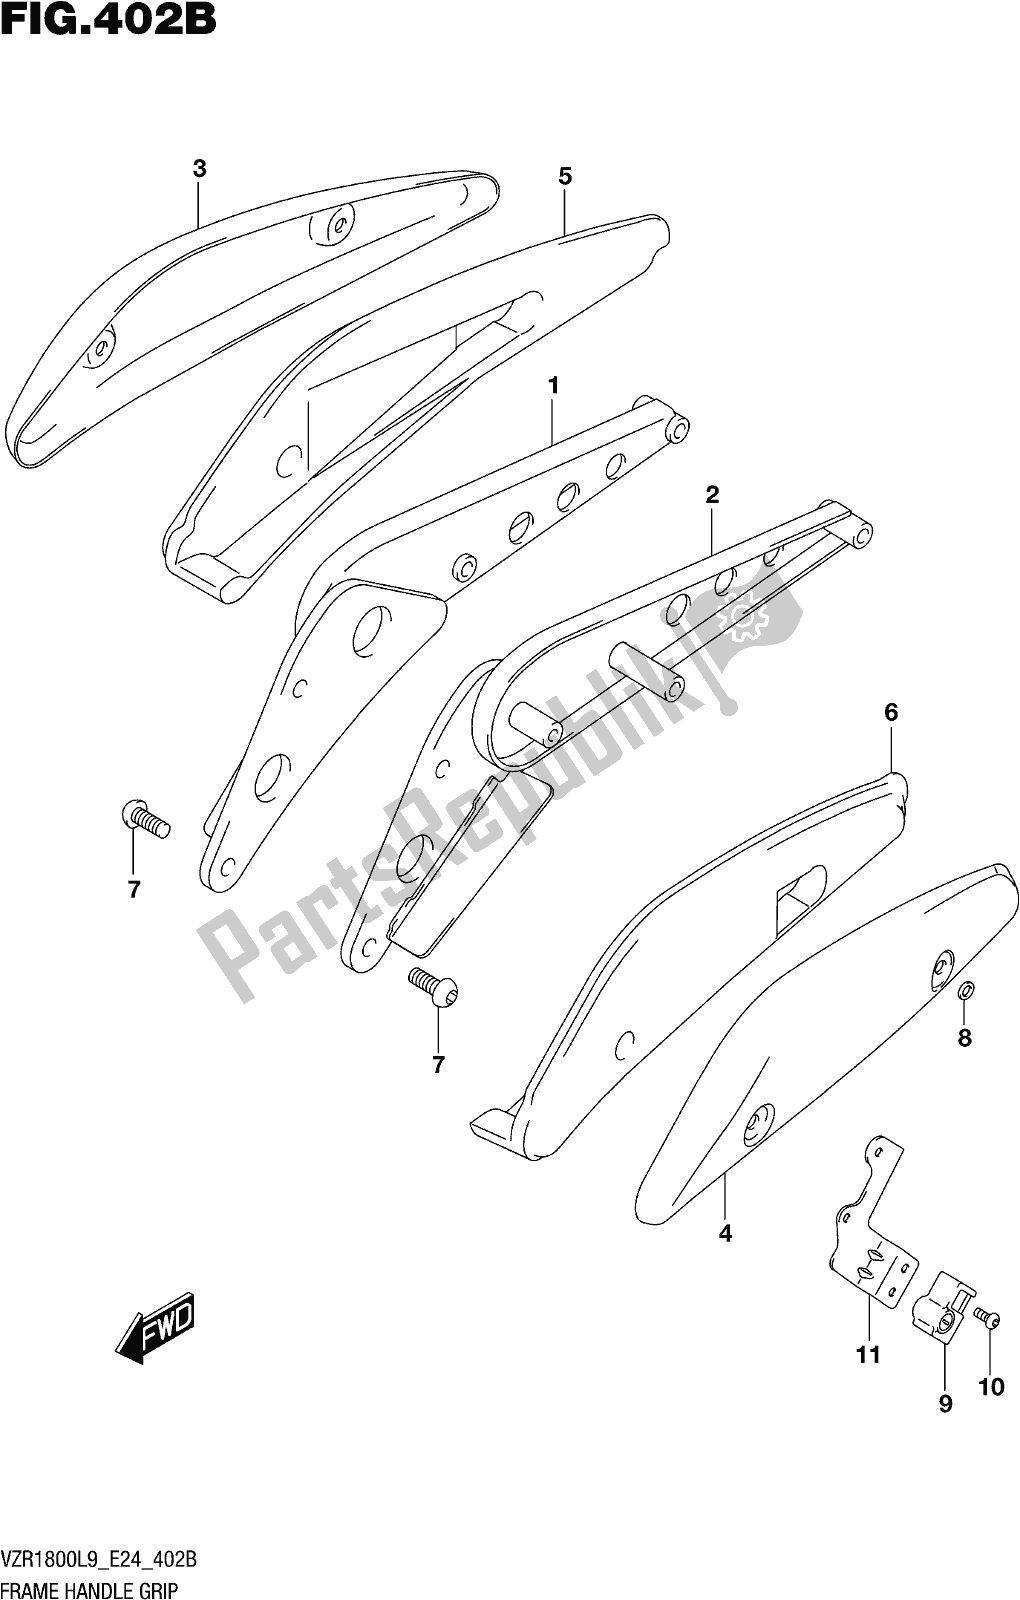 Toutes les pièces pour le Fig. 402b Frame Handle Grip (vzr1800bzl9 E24) du Suzuki VZR 1800 BZ 2019